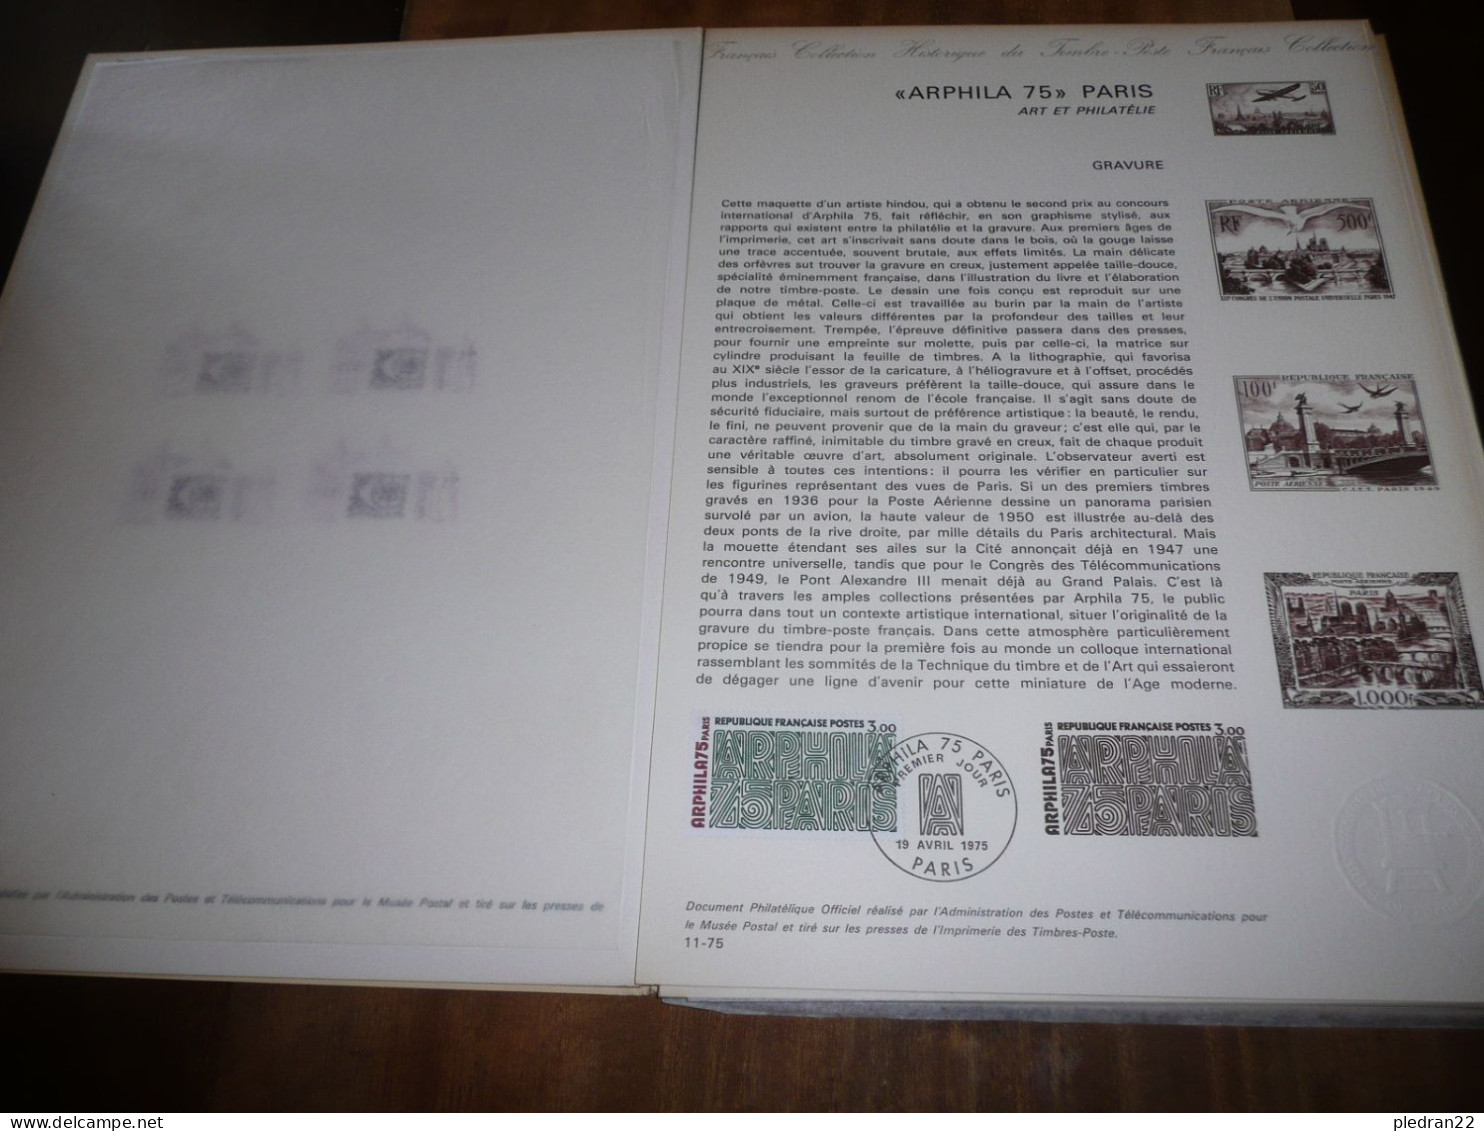 PHILATELIE TIMBRES COFFRET PRESENTOIR ARPHILA 75 PARIS 6 Au 16 JUIN 1975 AVEC 10 PLANCHES COMMEMORATIVES - Sammlungen (im Alben)